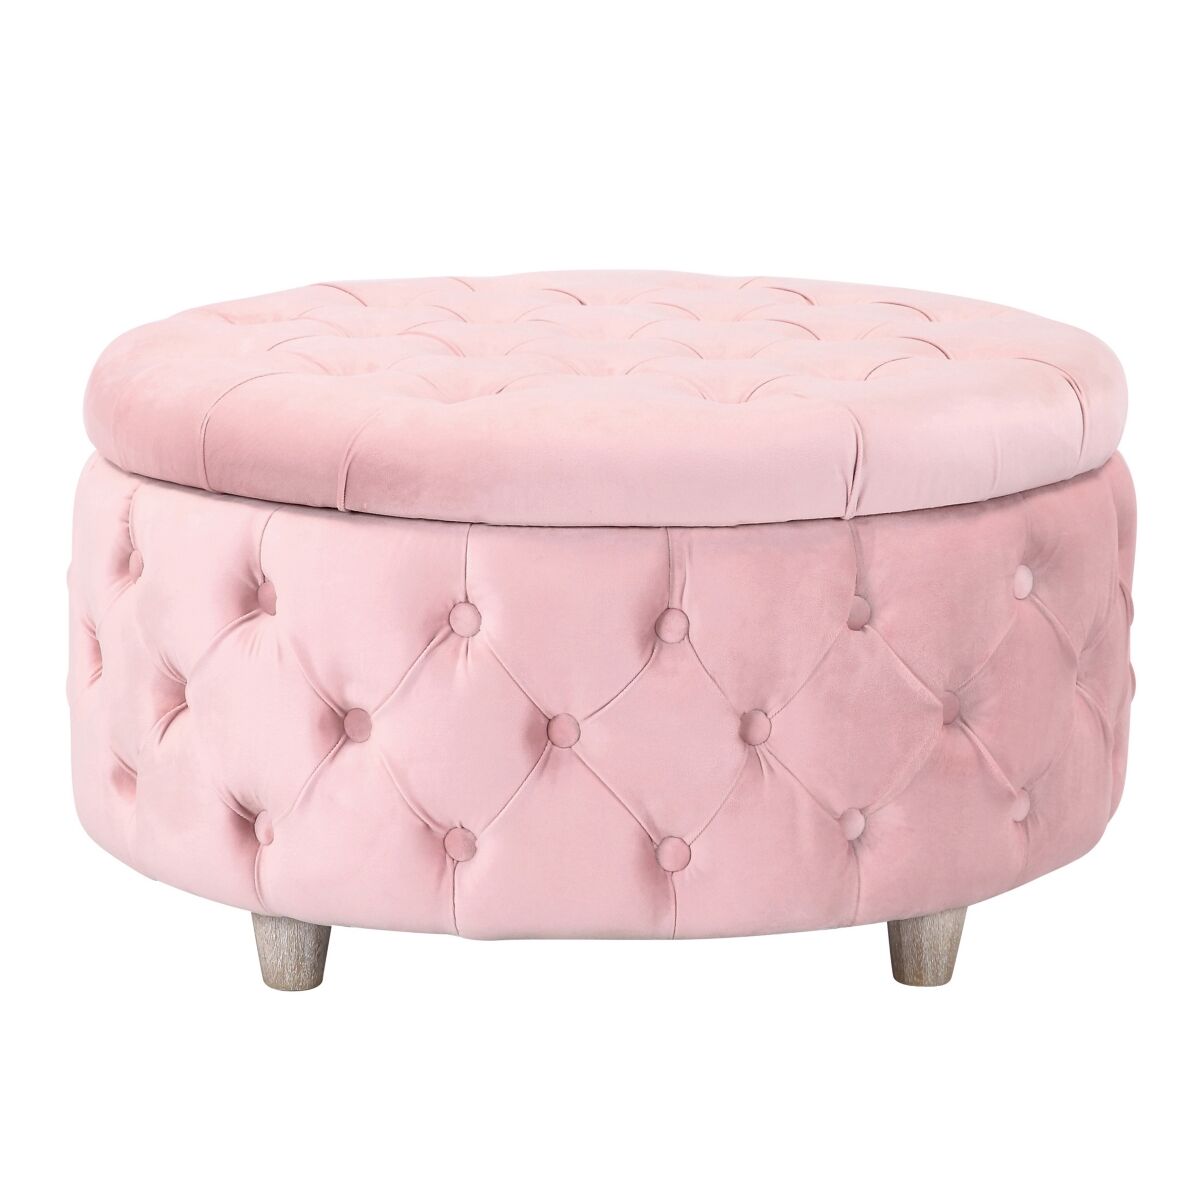 Westintrends Round Velvet Tufted Storage Ottoman for Living Room Bedroom - Velvet Pink